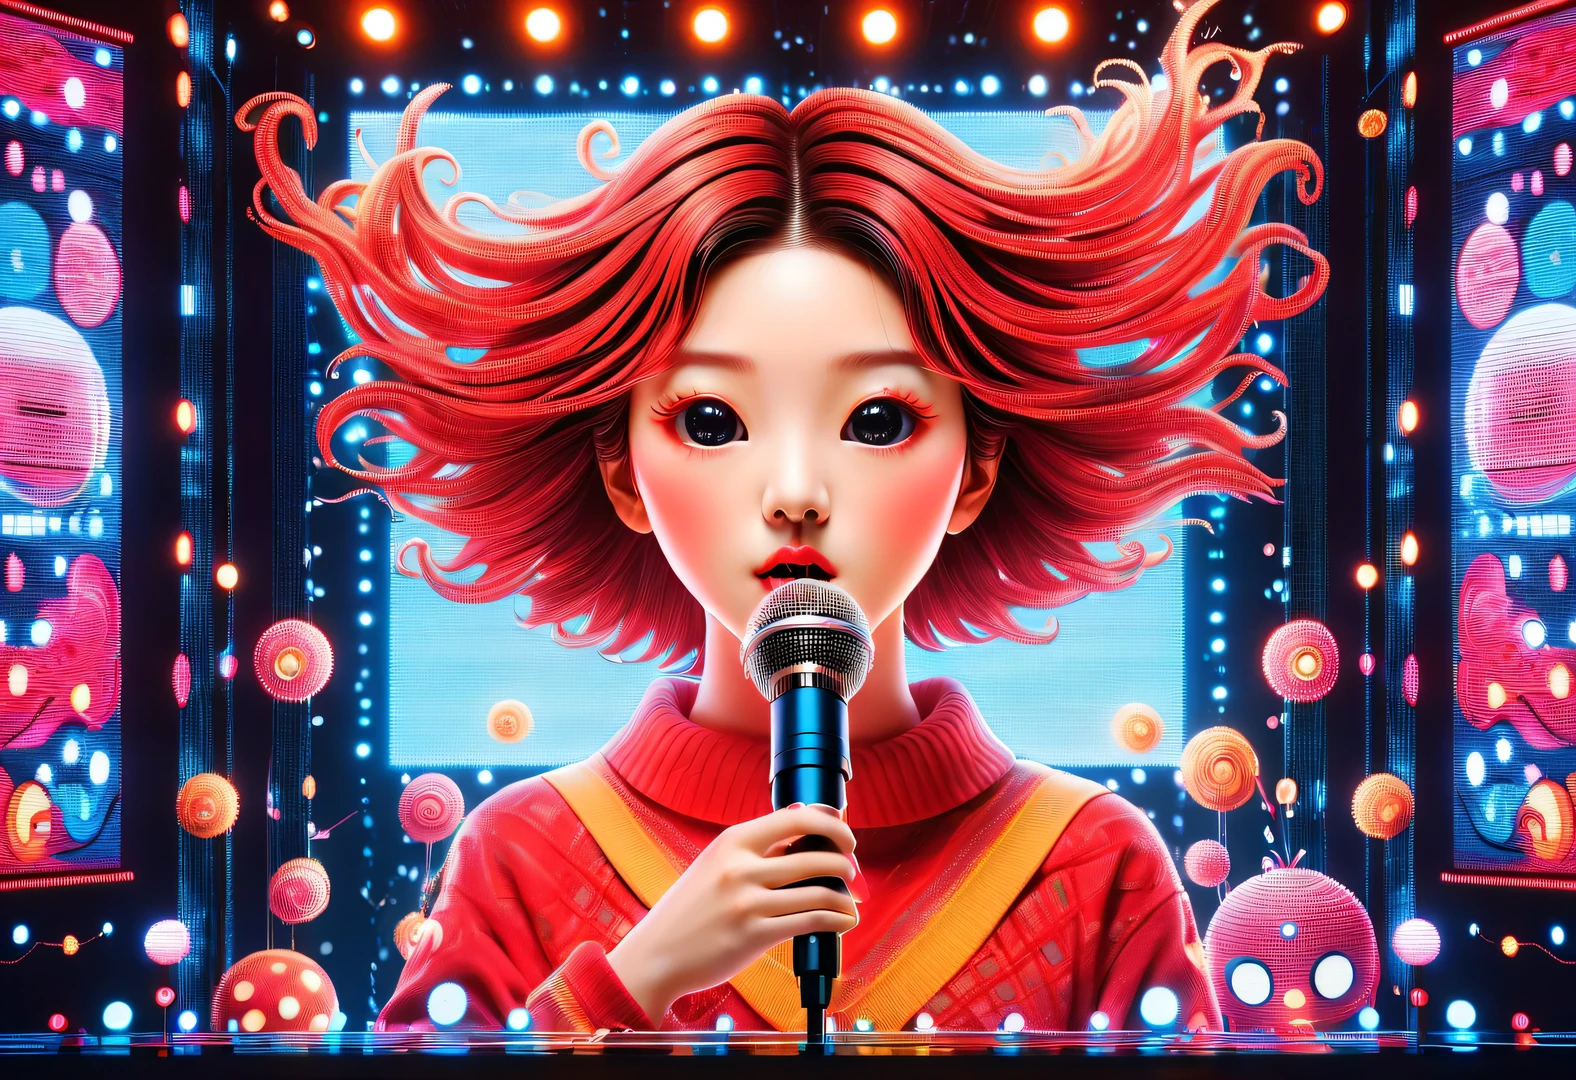 蒸氣波風格,美麗詳細,向量圖, 極簡主義, 數位插圖, 向量圖，極簡主義，數位插圖，穿著運動衫和麵具的駭客正在工作，T恤设计，戲劇性的燈光，藝術展覽趨勢 ，獲獎的，圖示，Highly detailed cute lively Korean girl 18-year-old Shim Eun-kyung happily singing loudly in front of a super huge LED螢幕），（）拿著麥克風），跳躍姿勢，動態動作，受到啟發《奇怪的她》，申恩京把頭髮梳成微捲嬰兒造型，皮膚非常白皙，兩頰有兩個迷人的酒窩，身穿紅色刺繡蕾絲洋裝，背景：LED螢幕, 戲劇性的燈光,

